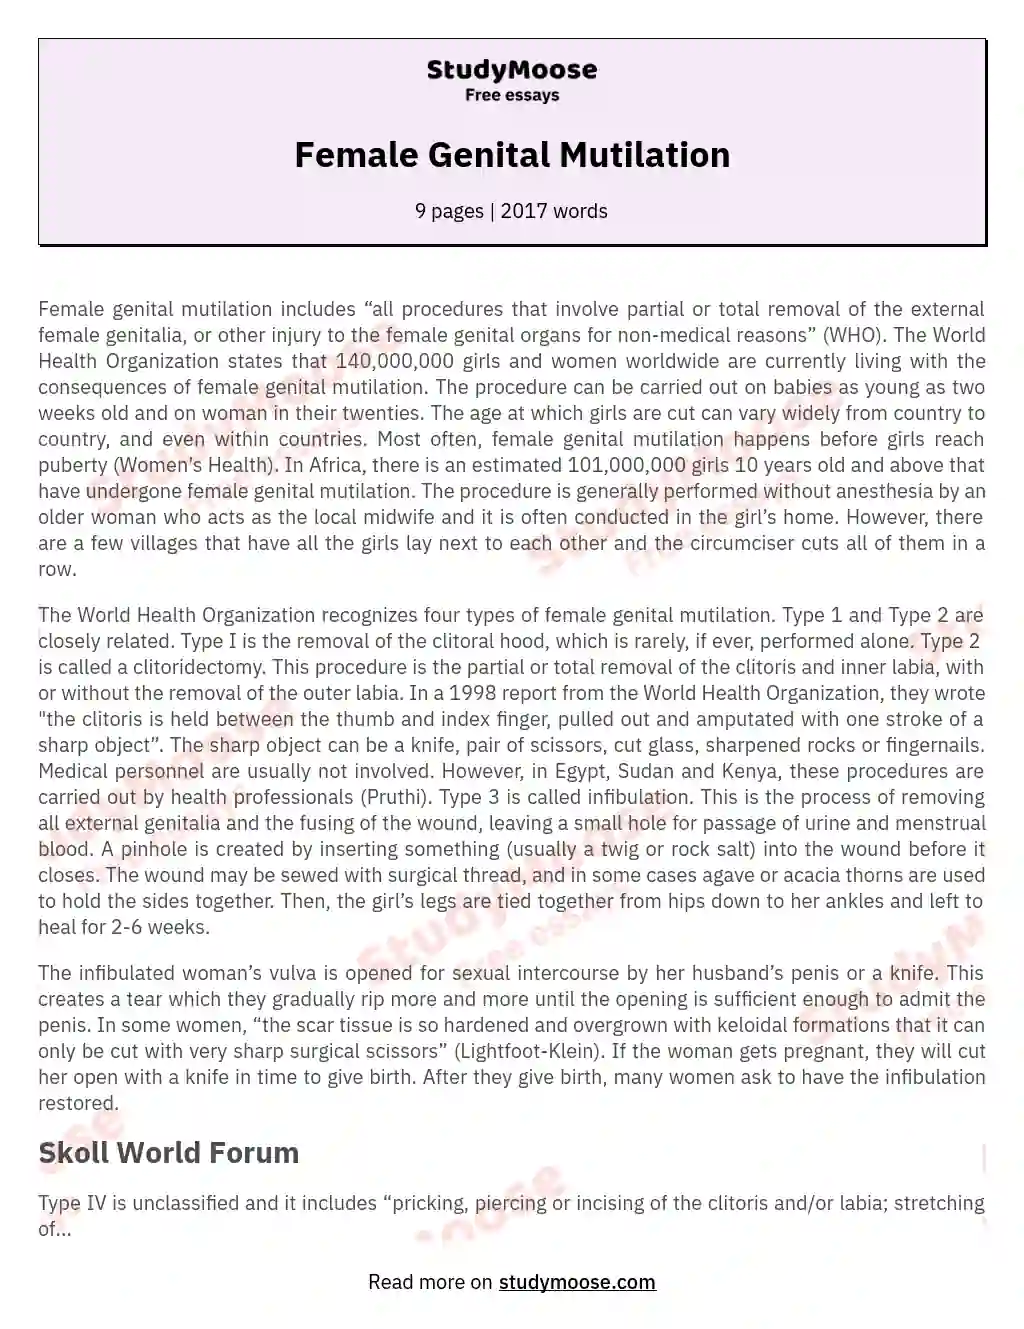 Female Genital Mutilation essay